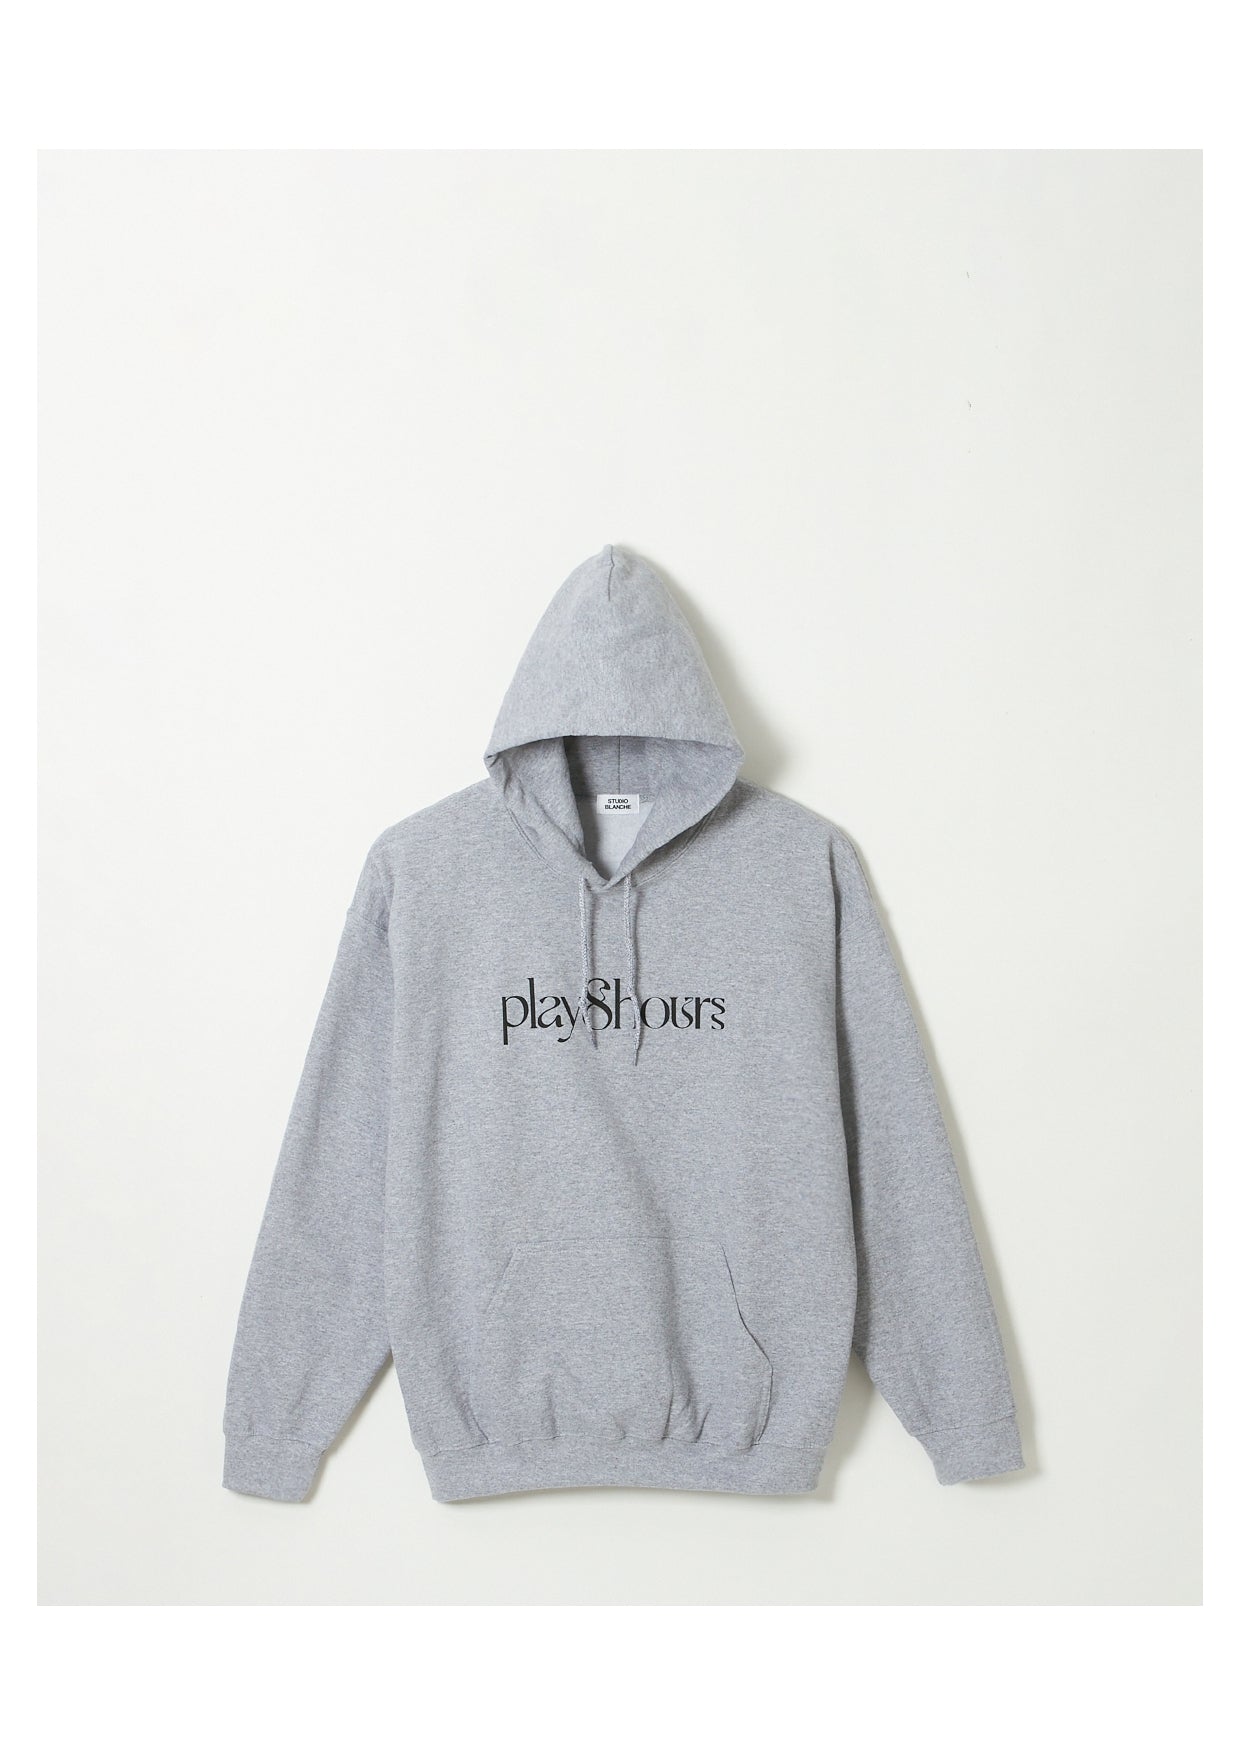 Play8hours hoodie(grey)